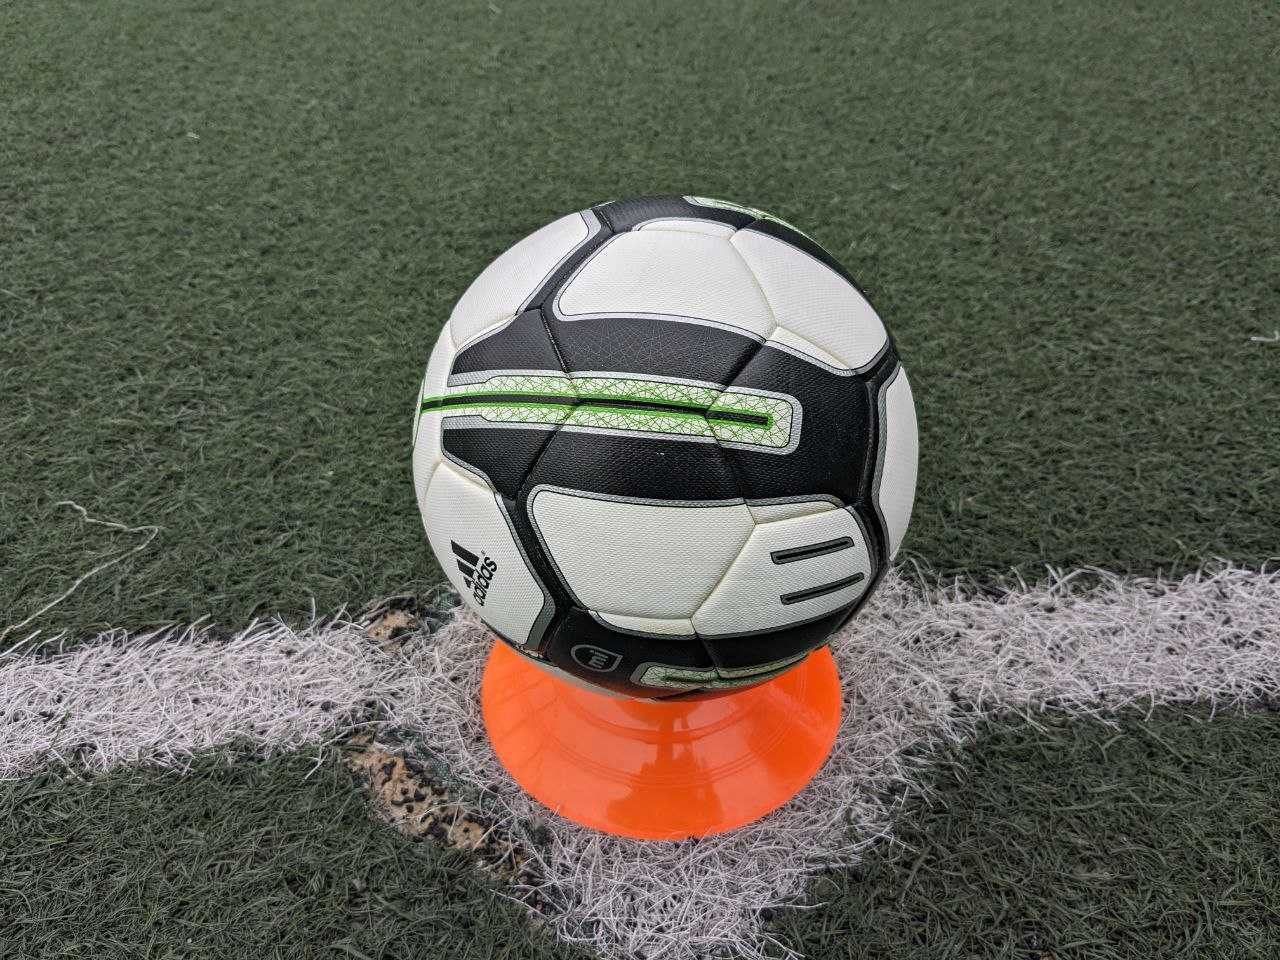 футбольный мяч Adidas Smart Ball